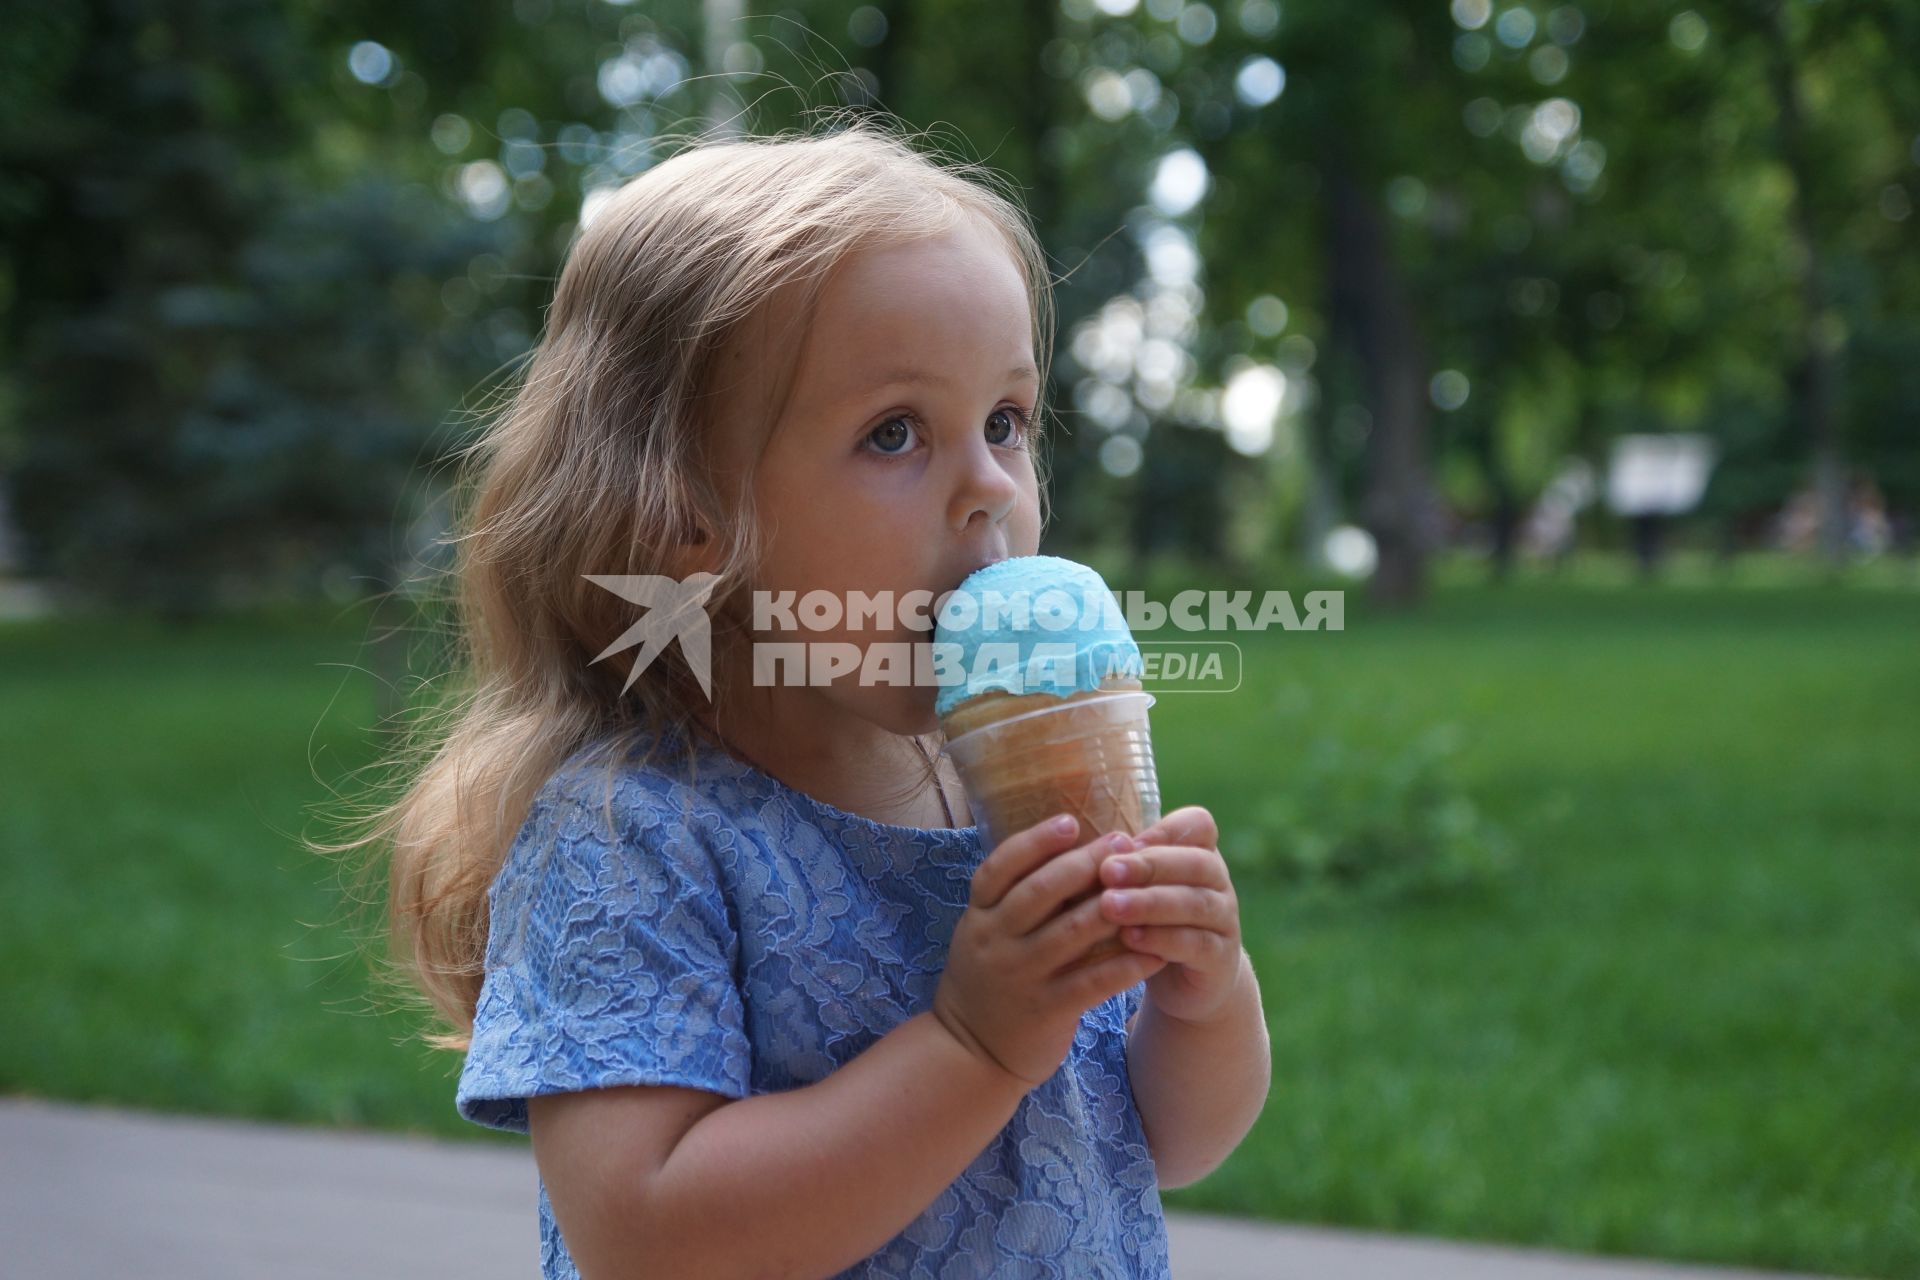 Самара. Девочка ест мороженое.